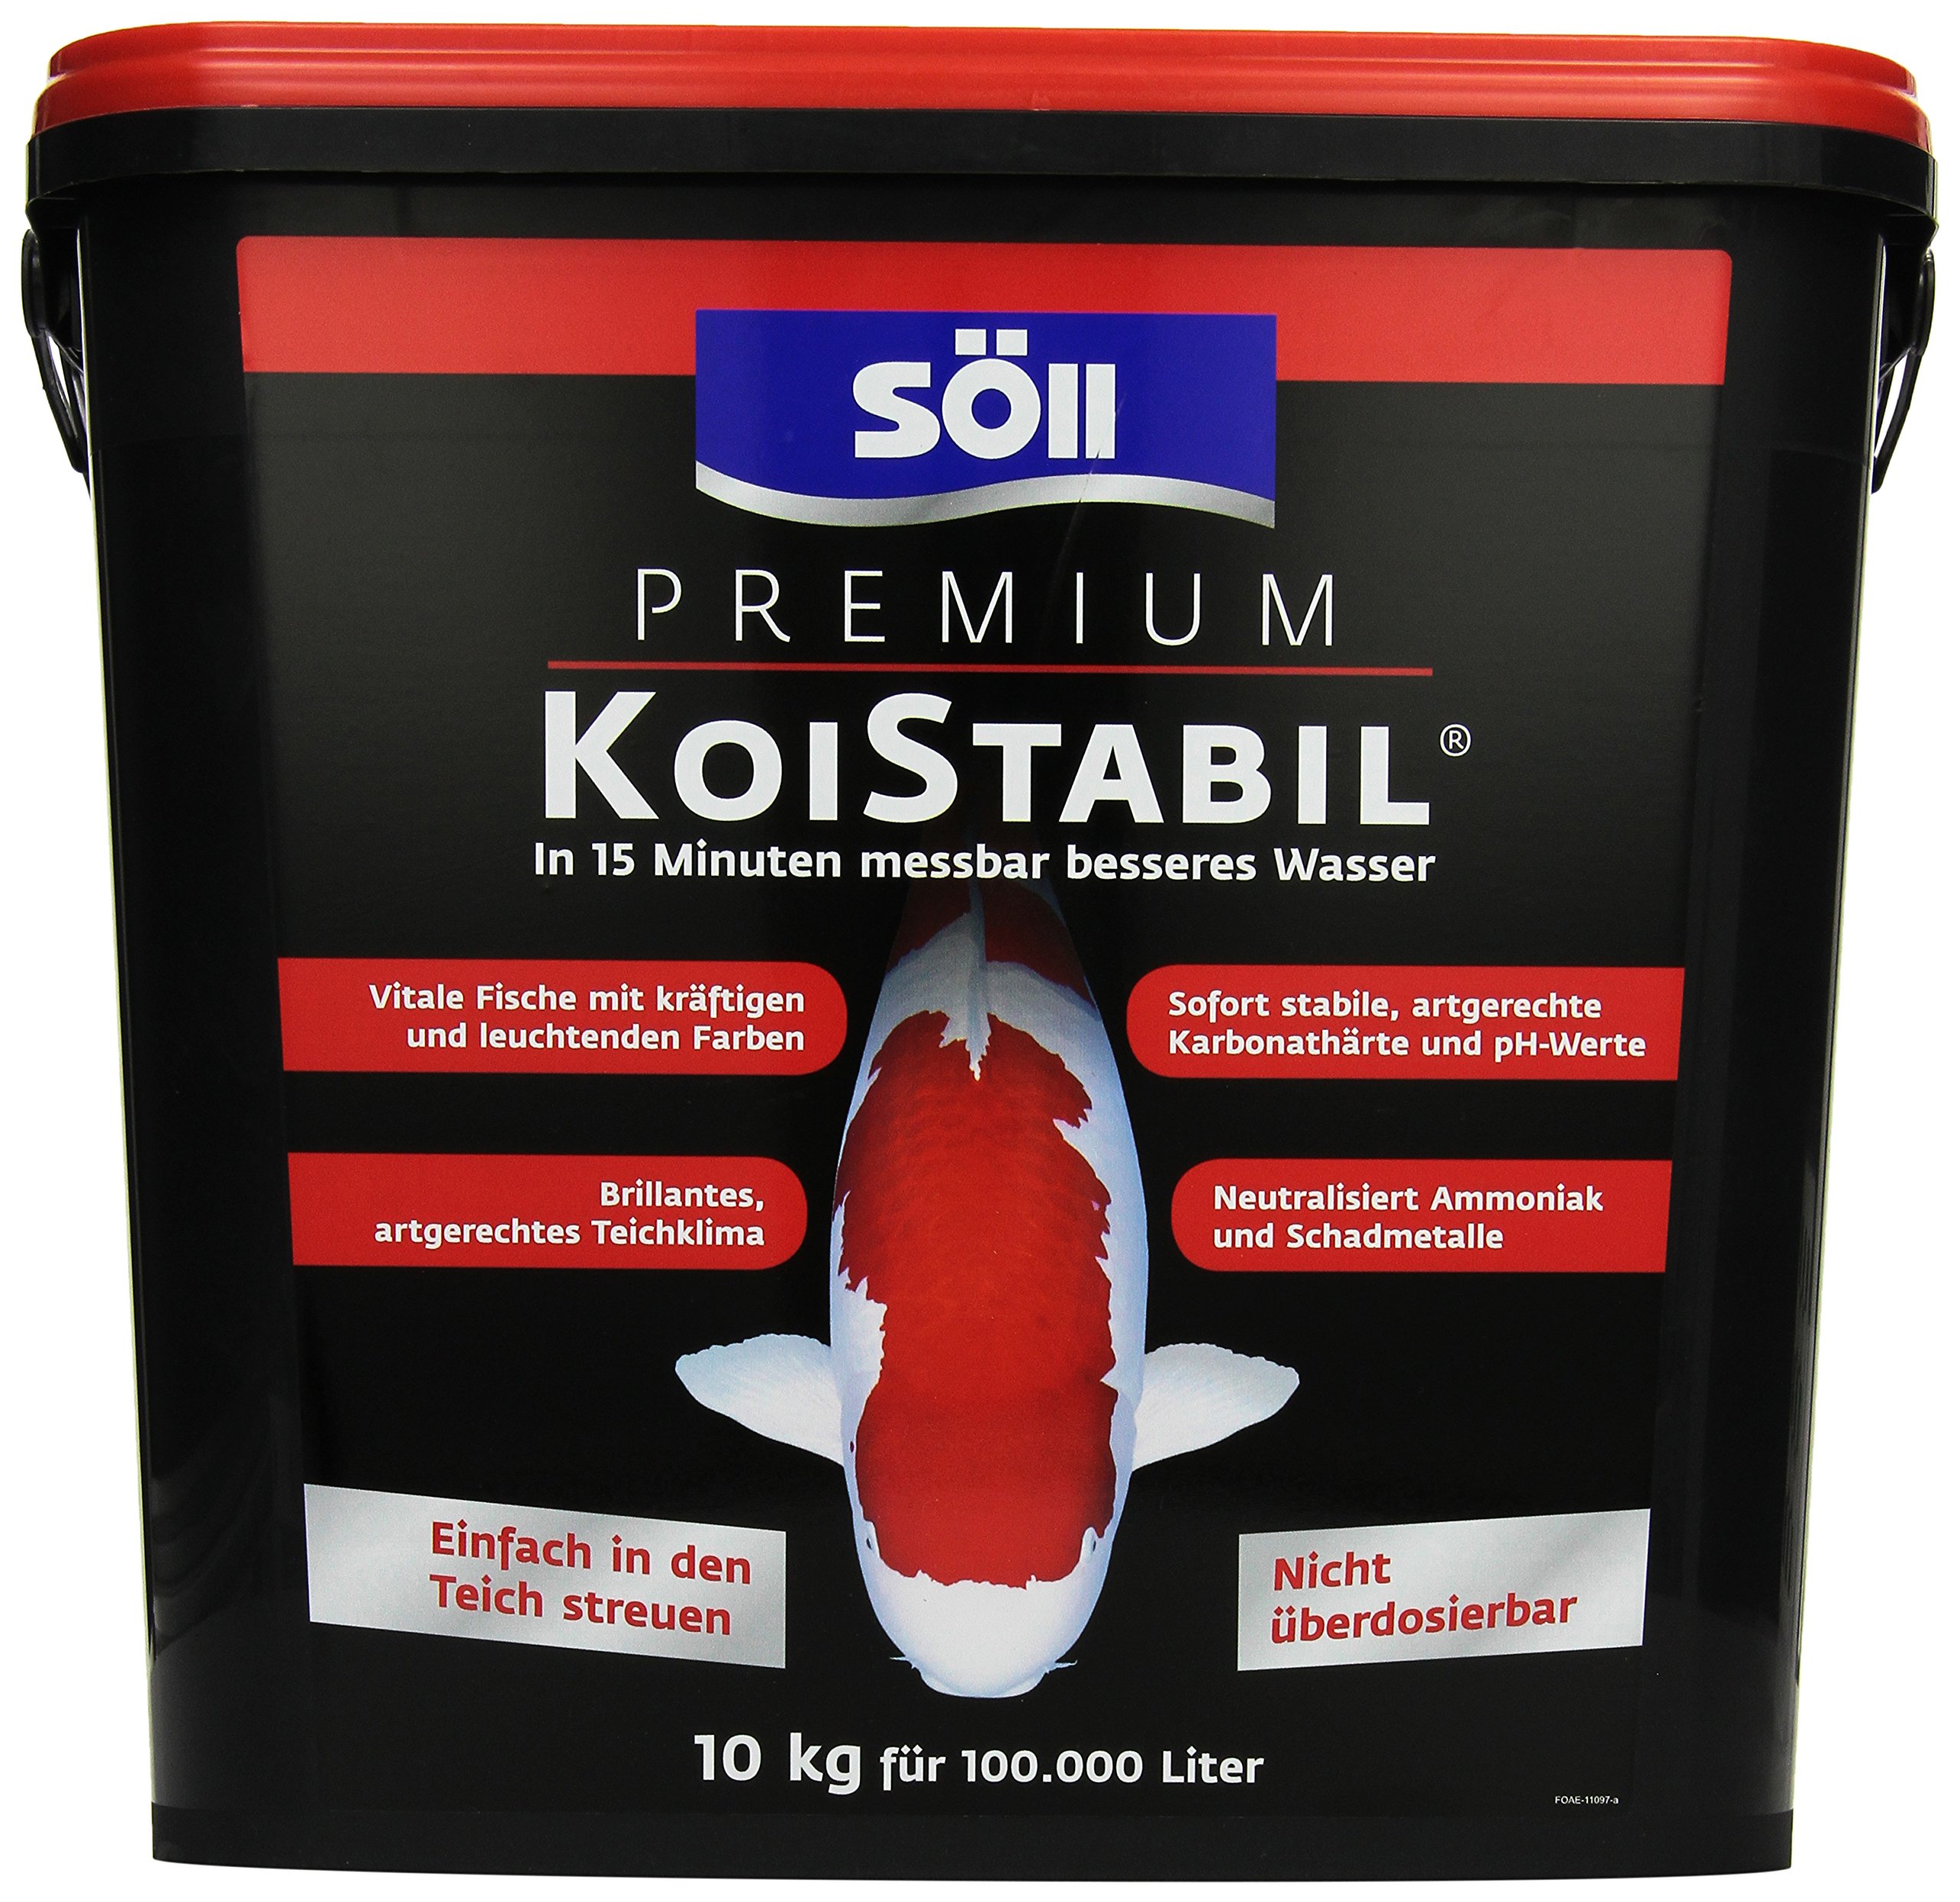 Söll 81894 Premium KoiStabil Teichstabilisator 10 kg - effektiver Wasseraufbereiter reguliert pH-Wert und KH-Wert für messbar besseres Teichwasser im Gartenteich Fischteich Koiteich, Koi-gerecht